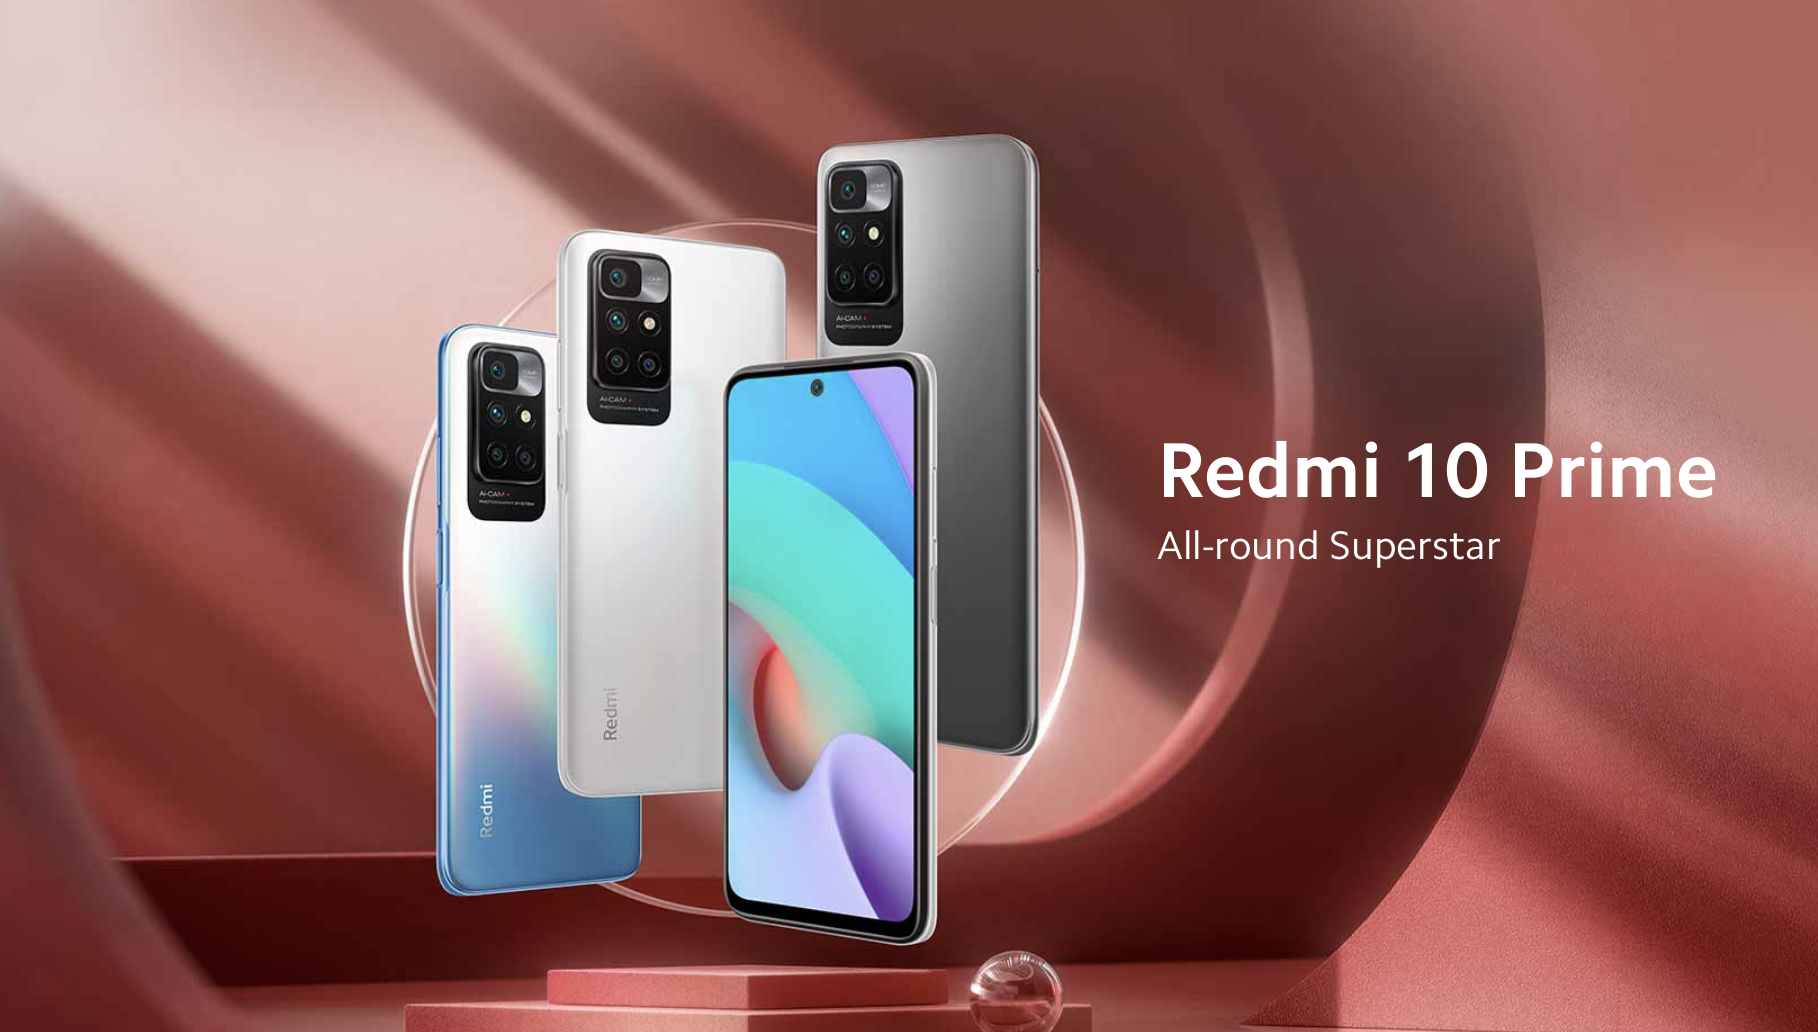 Xiaomi prezentuje Redmi 10 Prime z ekranem 90Hz, układem MediaTek Helio G88 i baterią 6000mAh za 170$